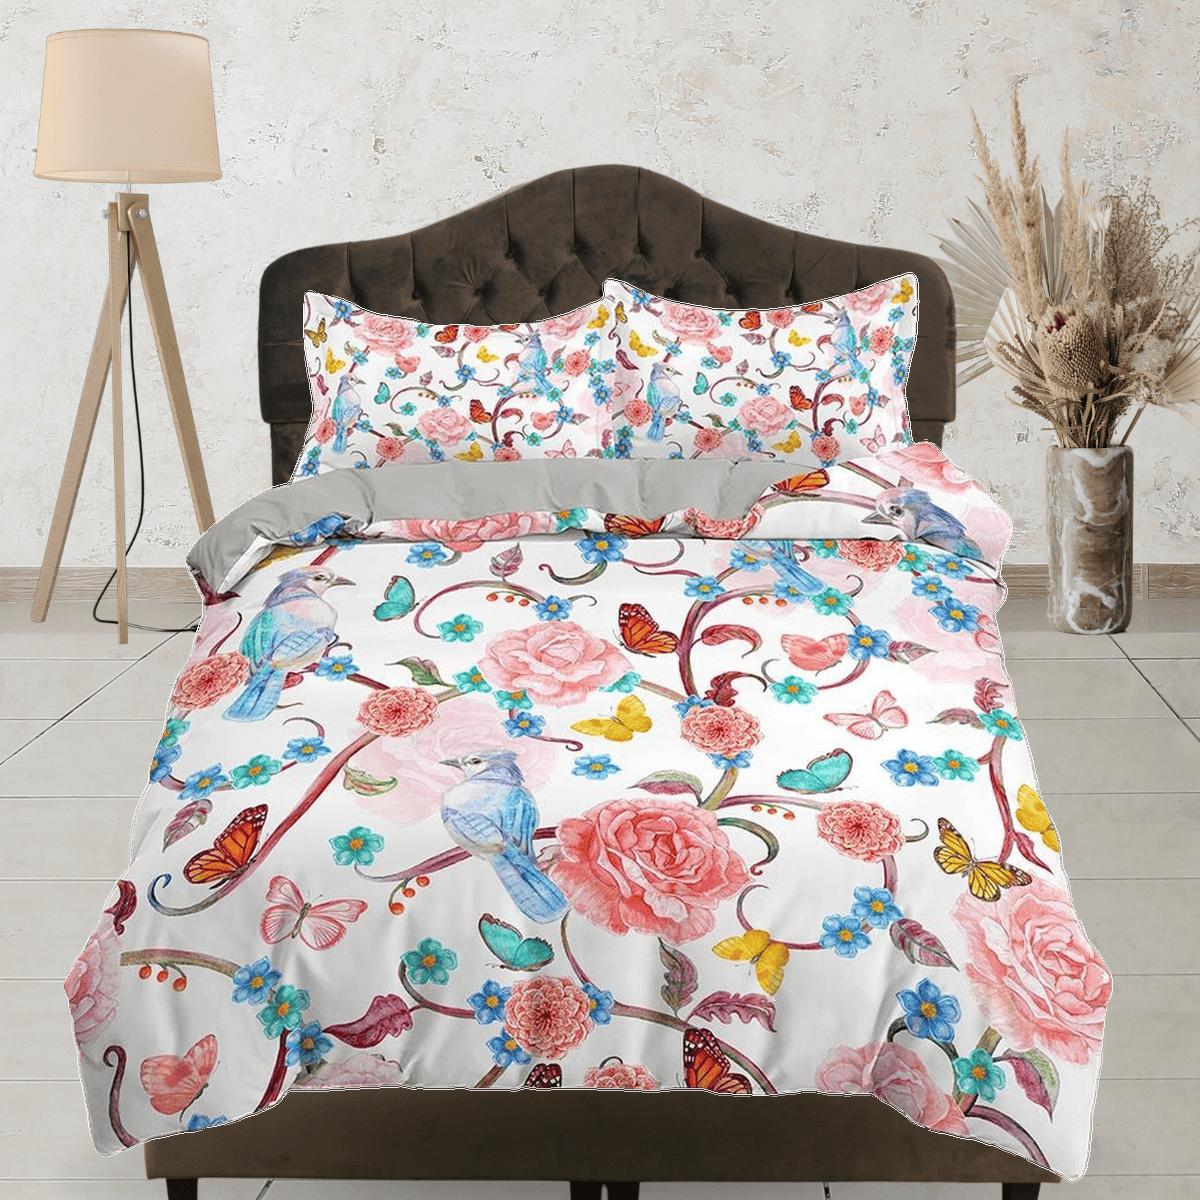 daintyduvet Hummingbird bedding, floral duvet cover queen, king, boho duvet, designer bedding, aesthetic bedding, maximalist full size bedding